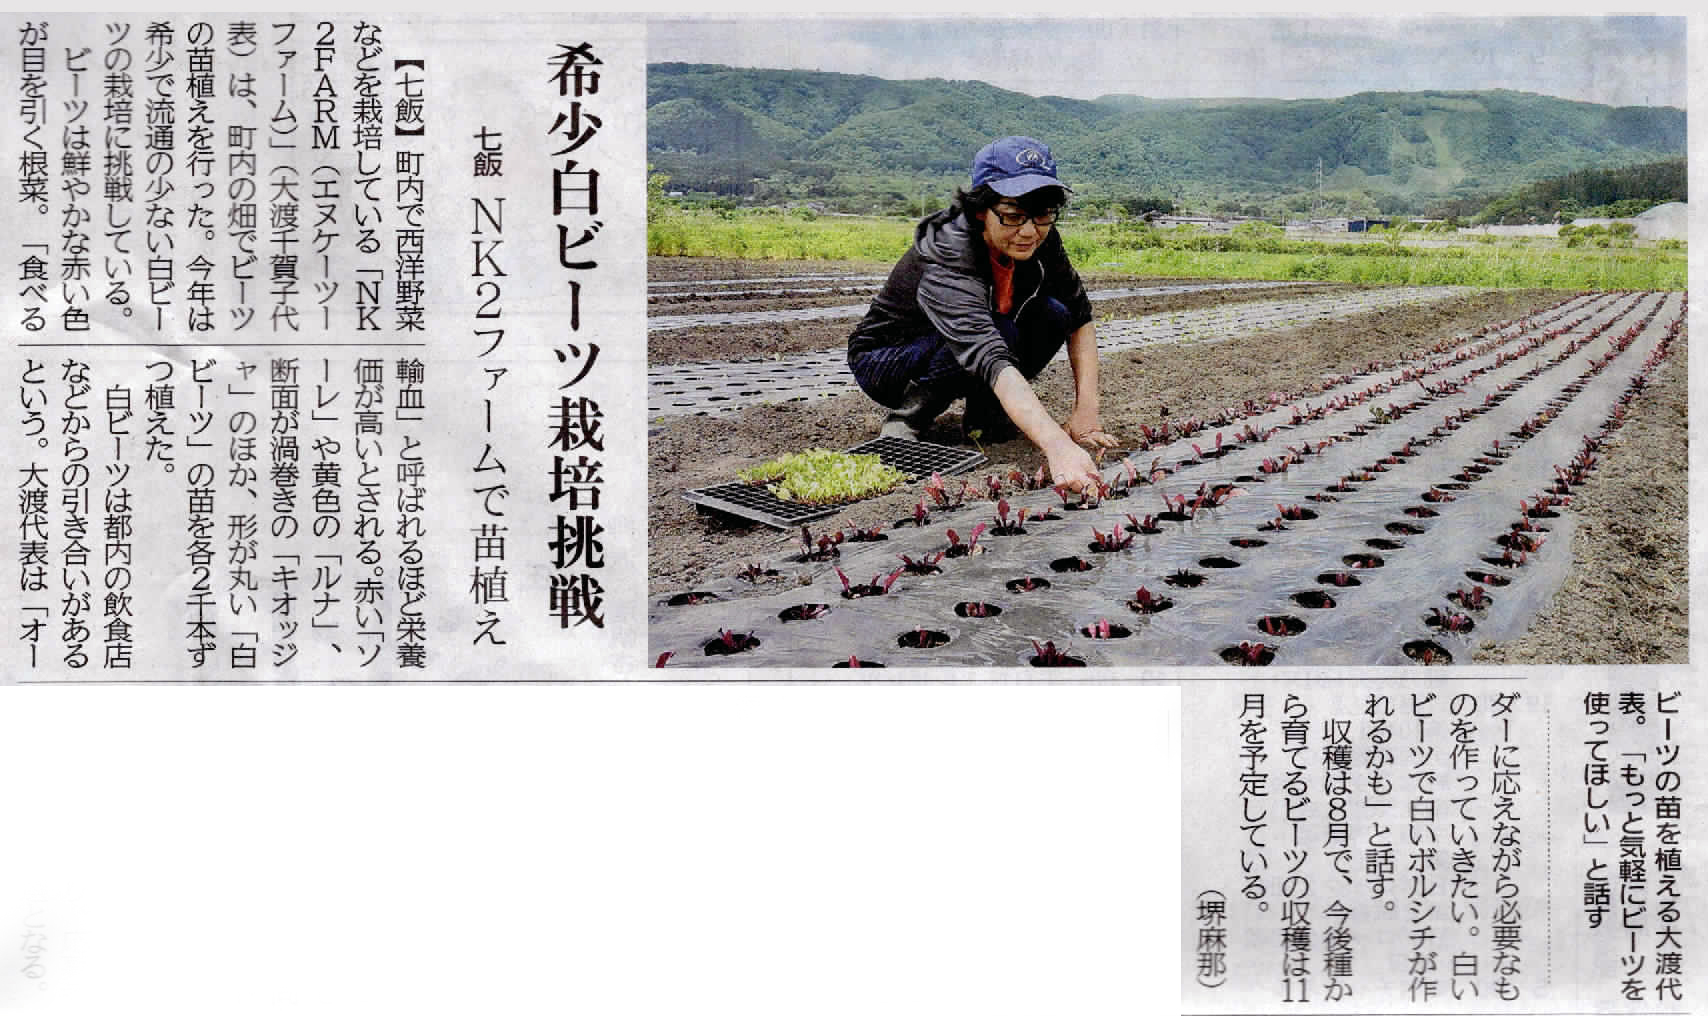 北海道新聞に掲載されました。